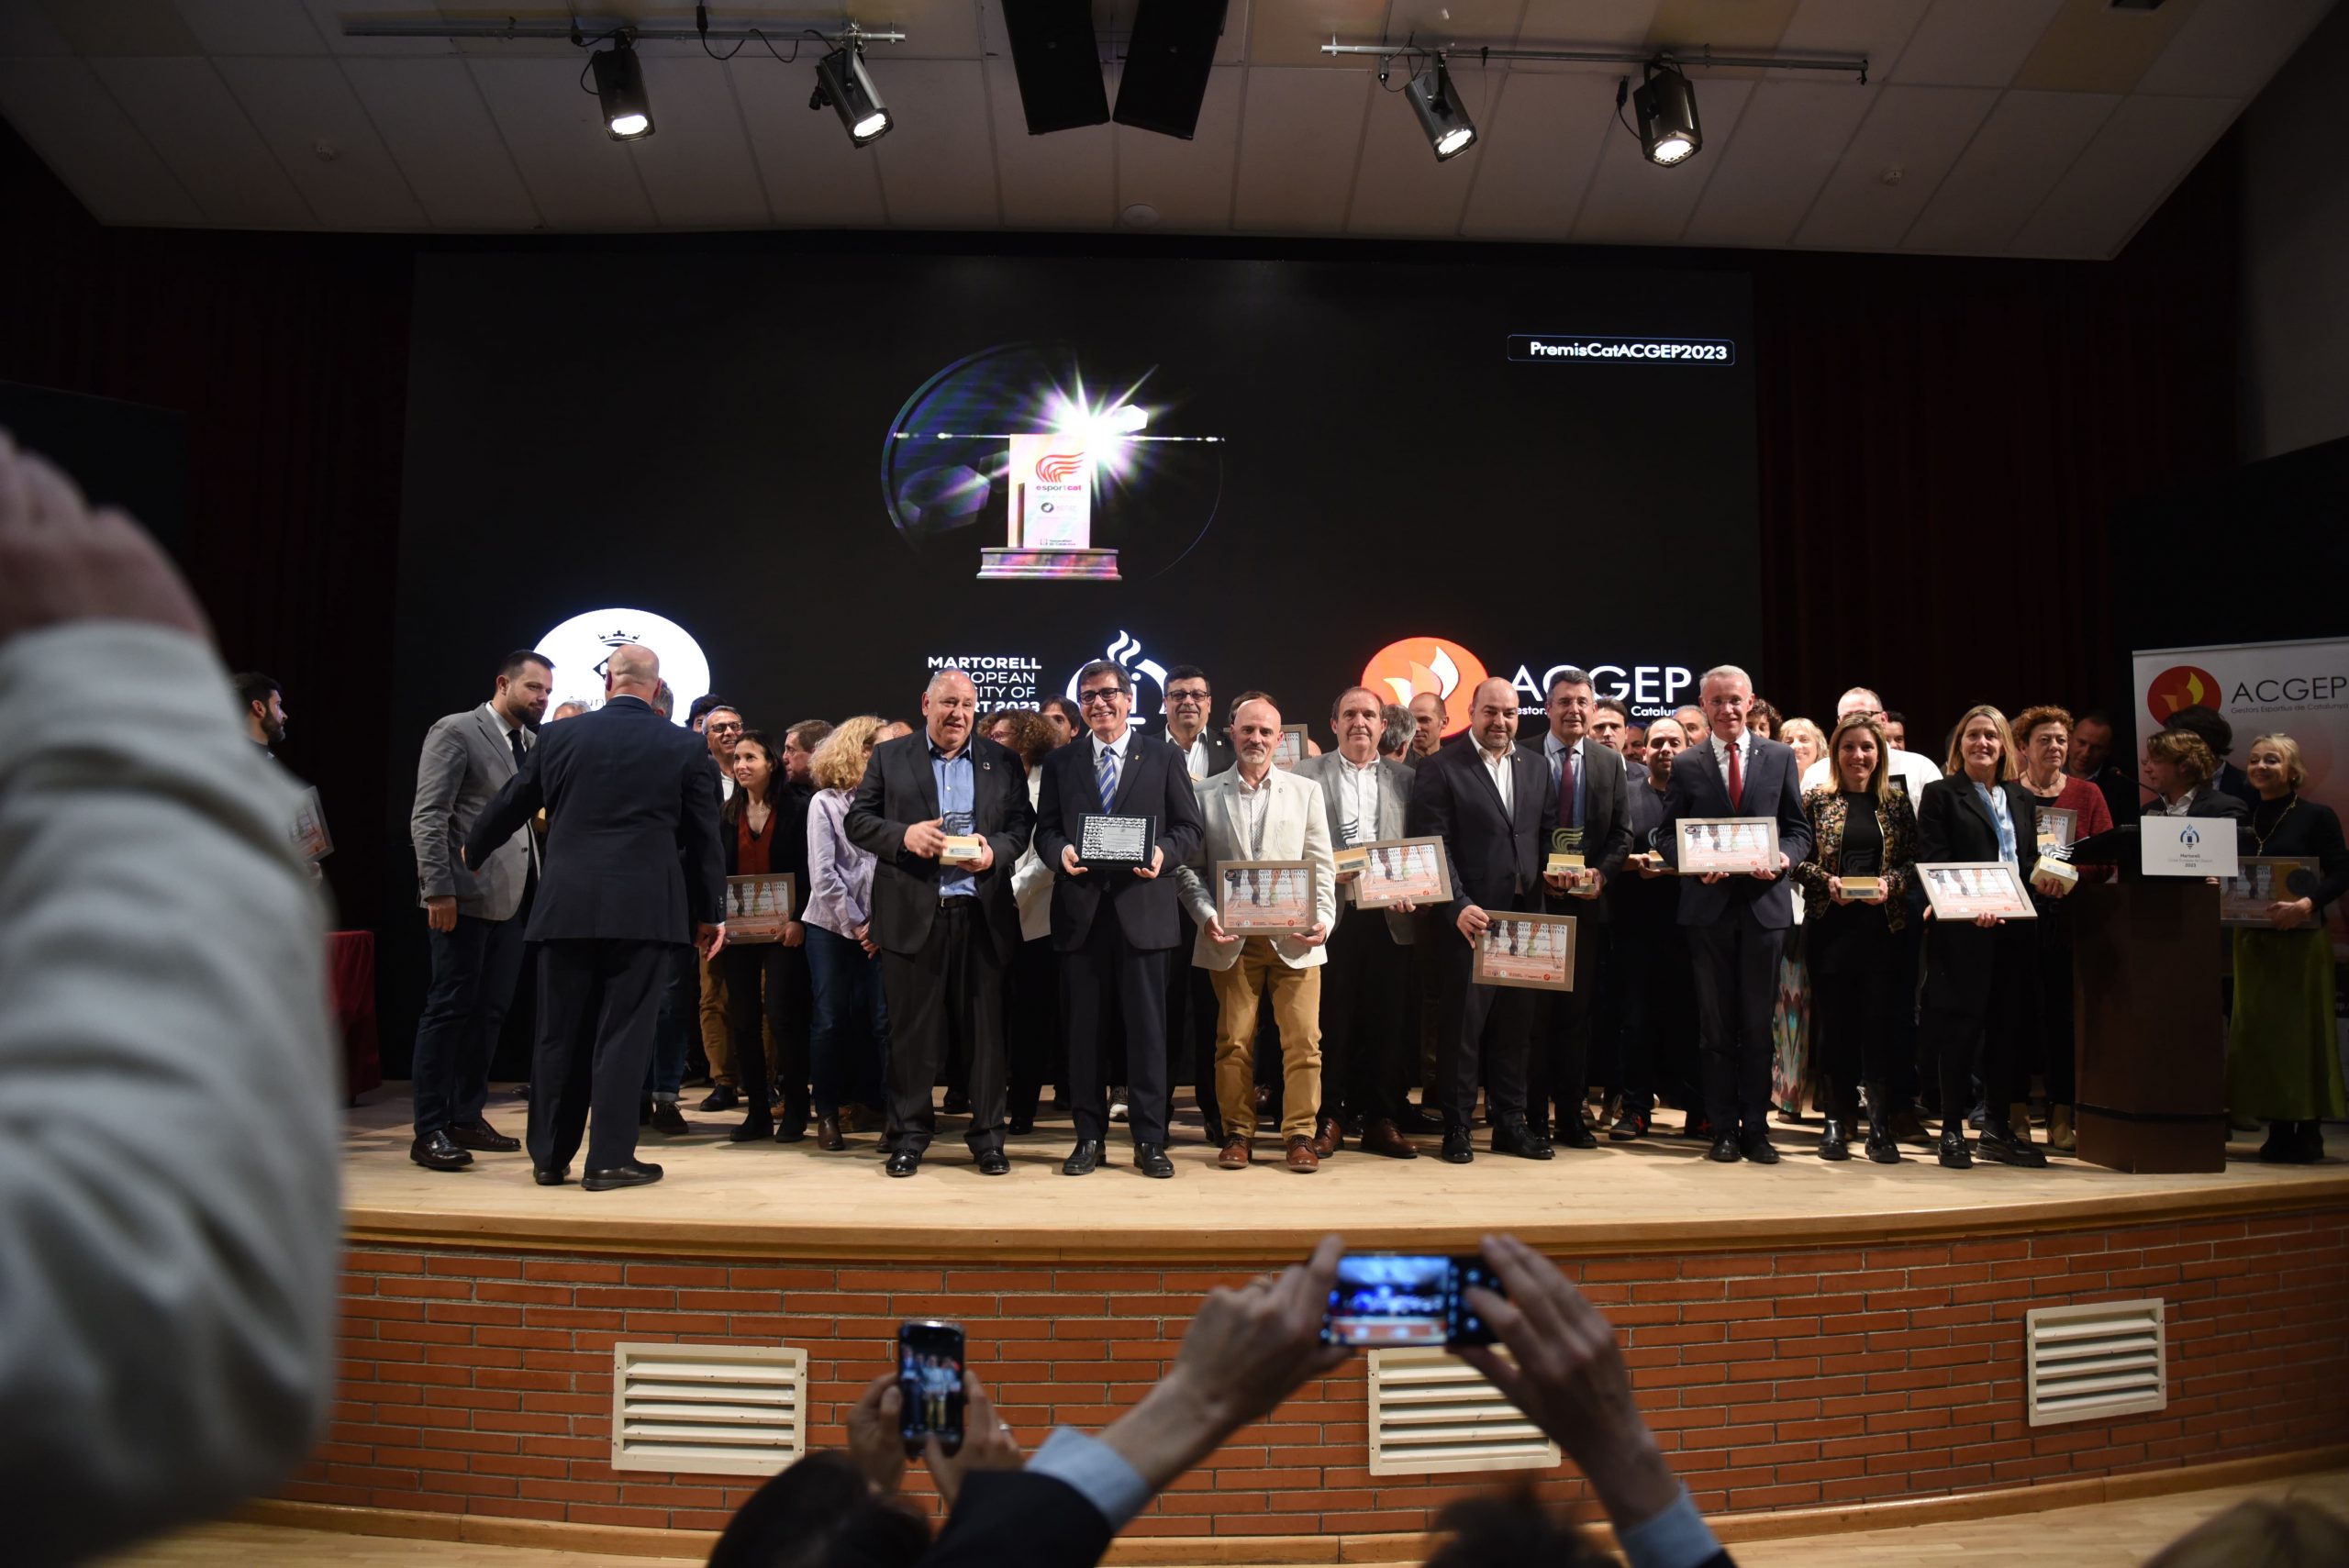 L’ACGEP celebra a Martorell els professionals de la gestió esportiva en una gala amb 37 premiats